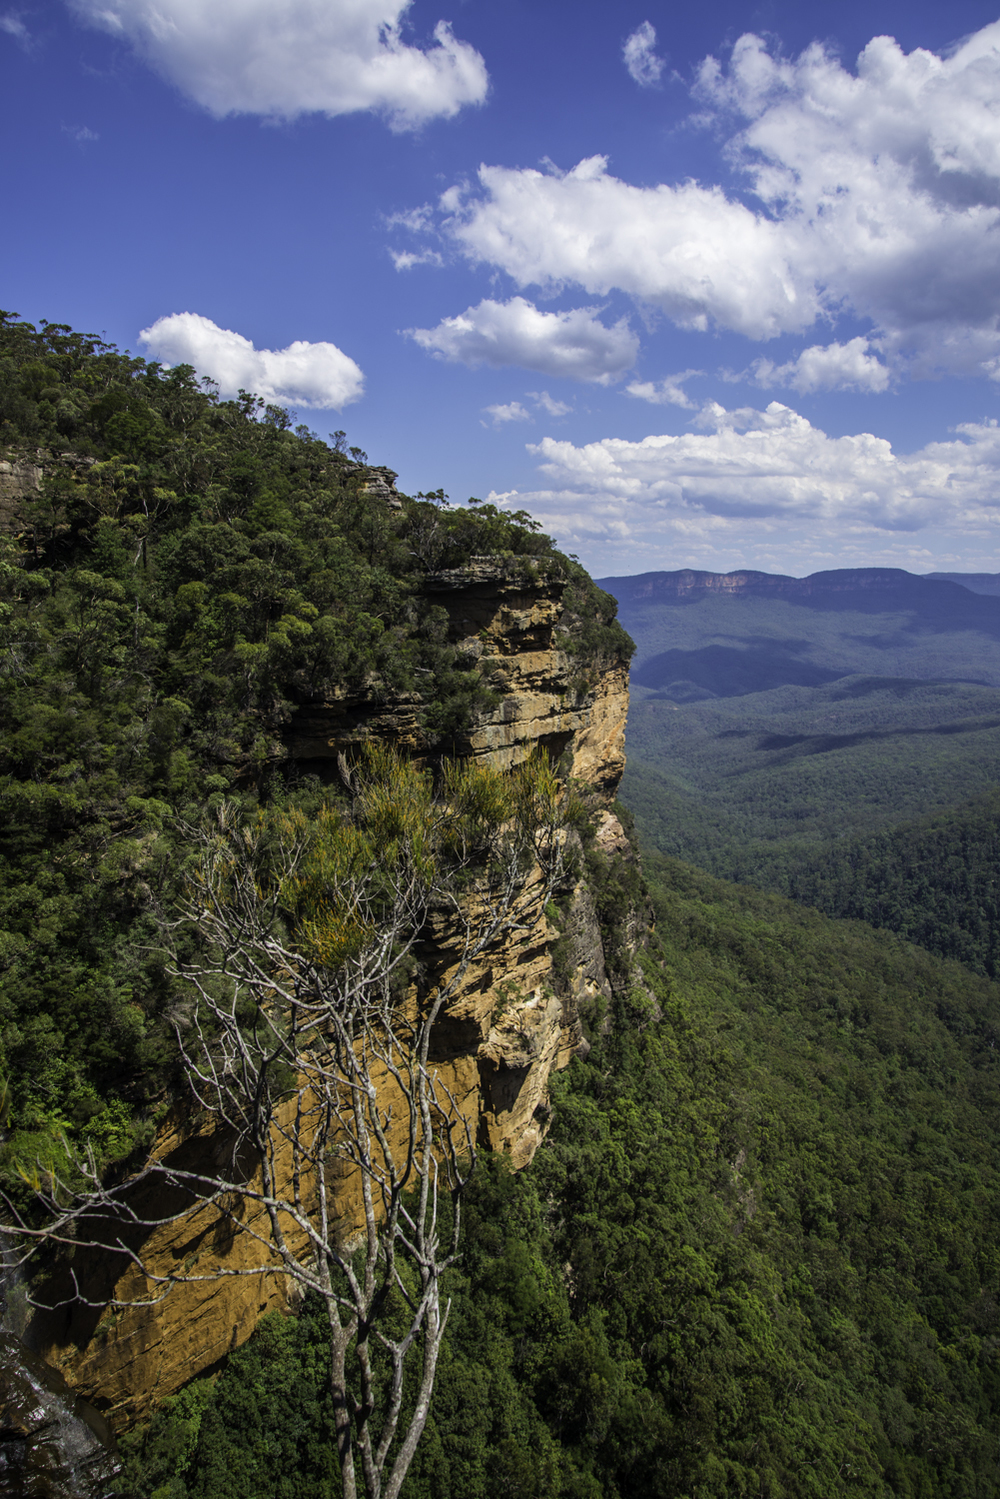 национальный парк "Голубые Горы", Австралия